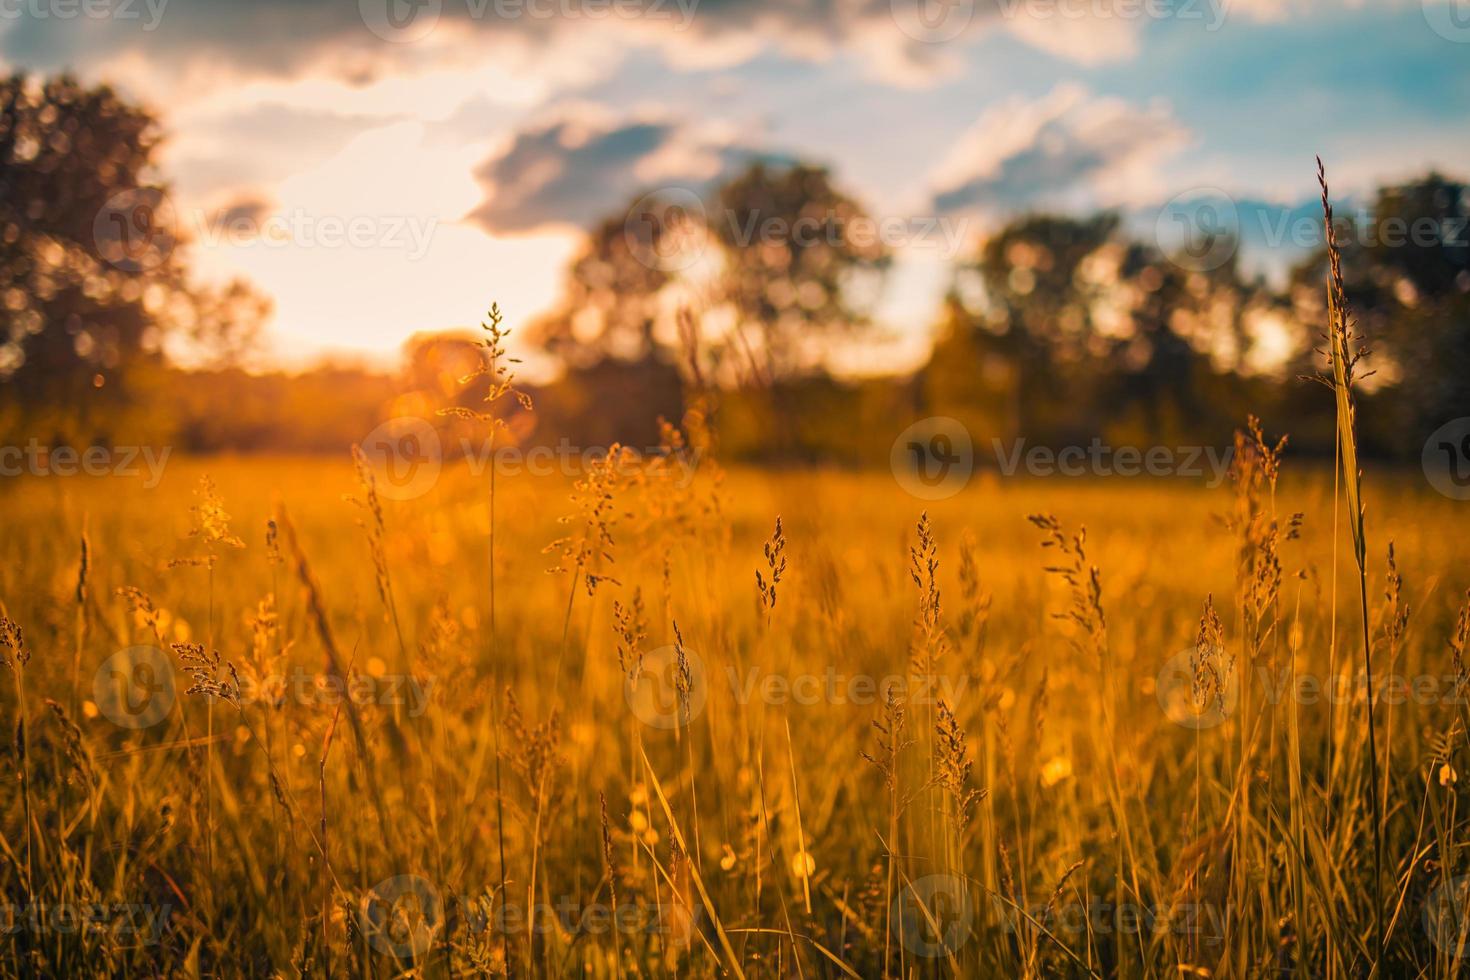 abstract soft focus tramonto campo paesaggio di fiori gialli ed erba prato caldo ora d'oro tramonto tempo di alba. primo piano tranquillo della natura di primavera estate e sfondo sfocato della foresta. natura idilliaca foto